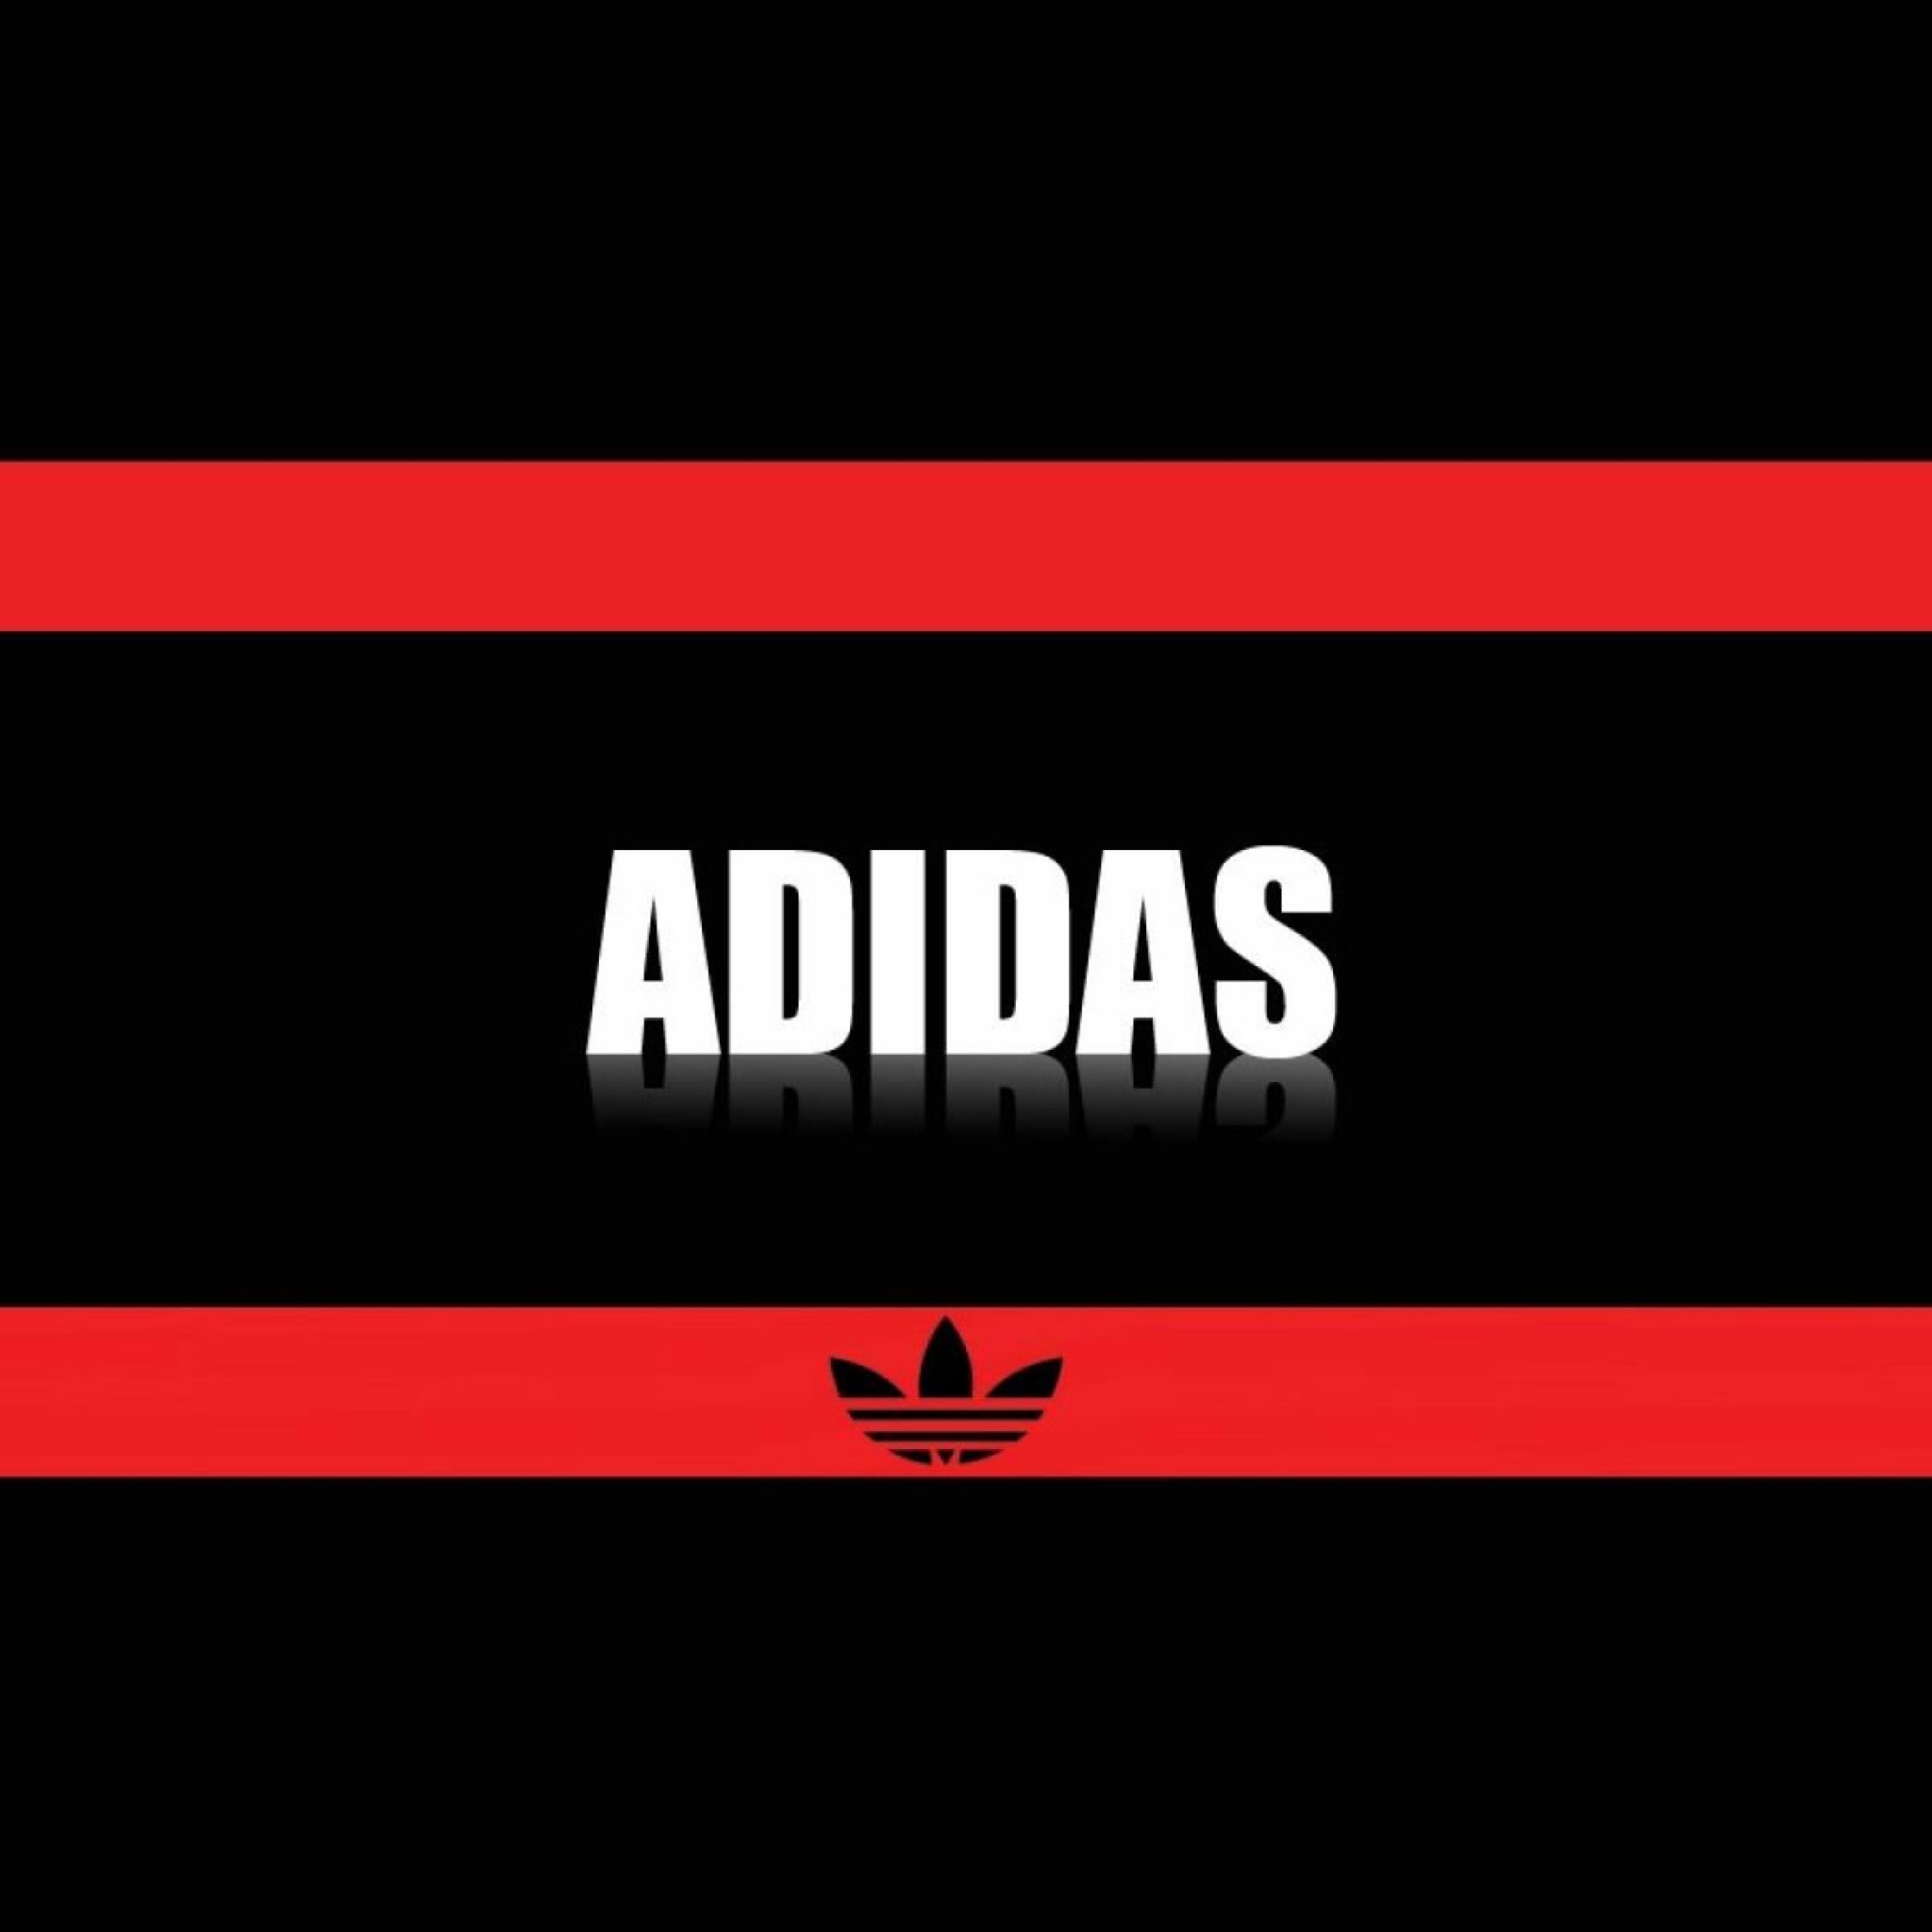 Adidas Logo Brand Wallpaper Wallpapers Pic Ipad タブレット壁紙ギャラリー